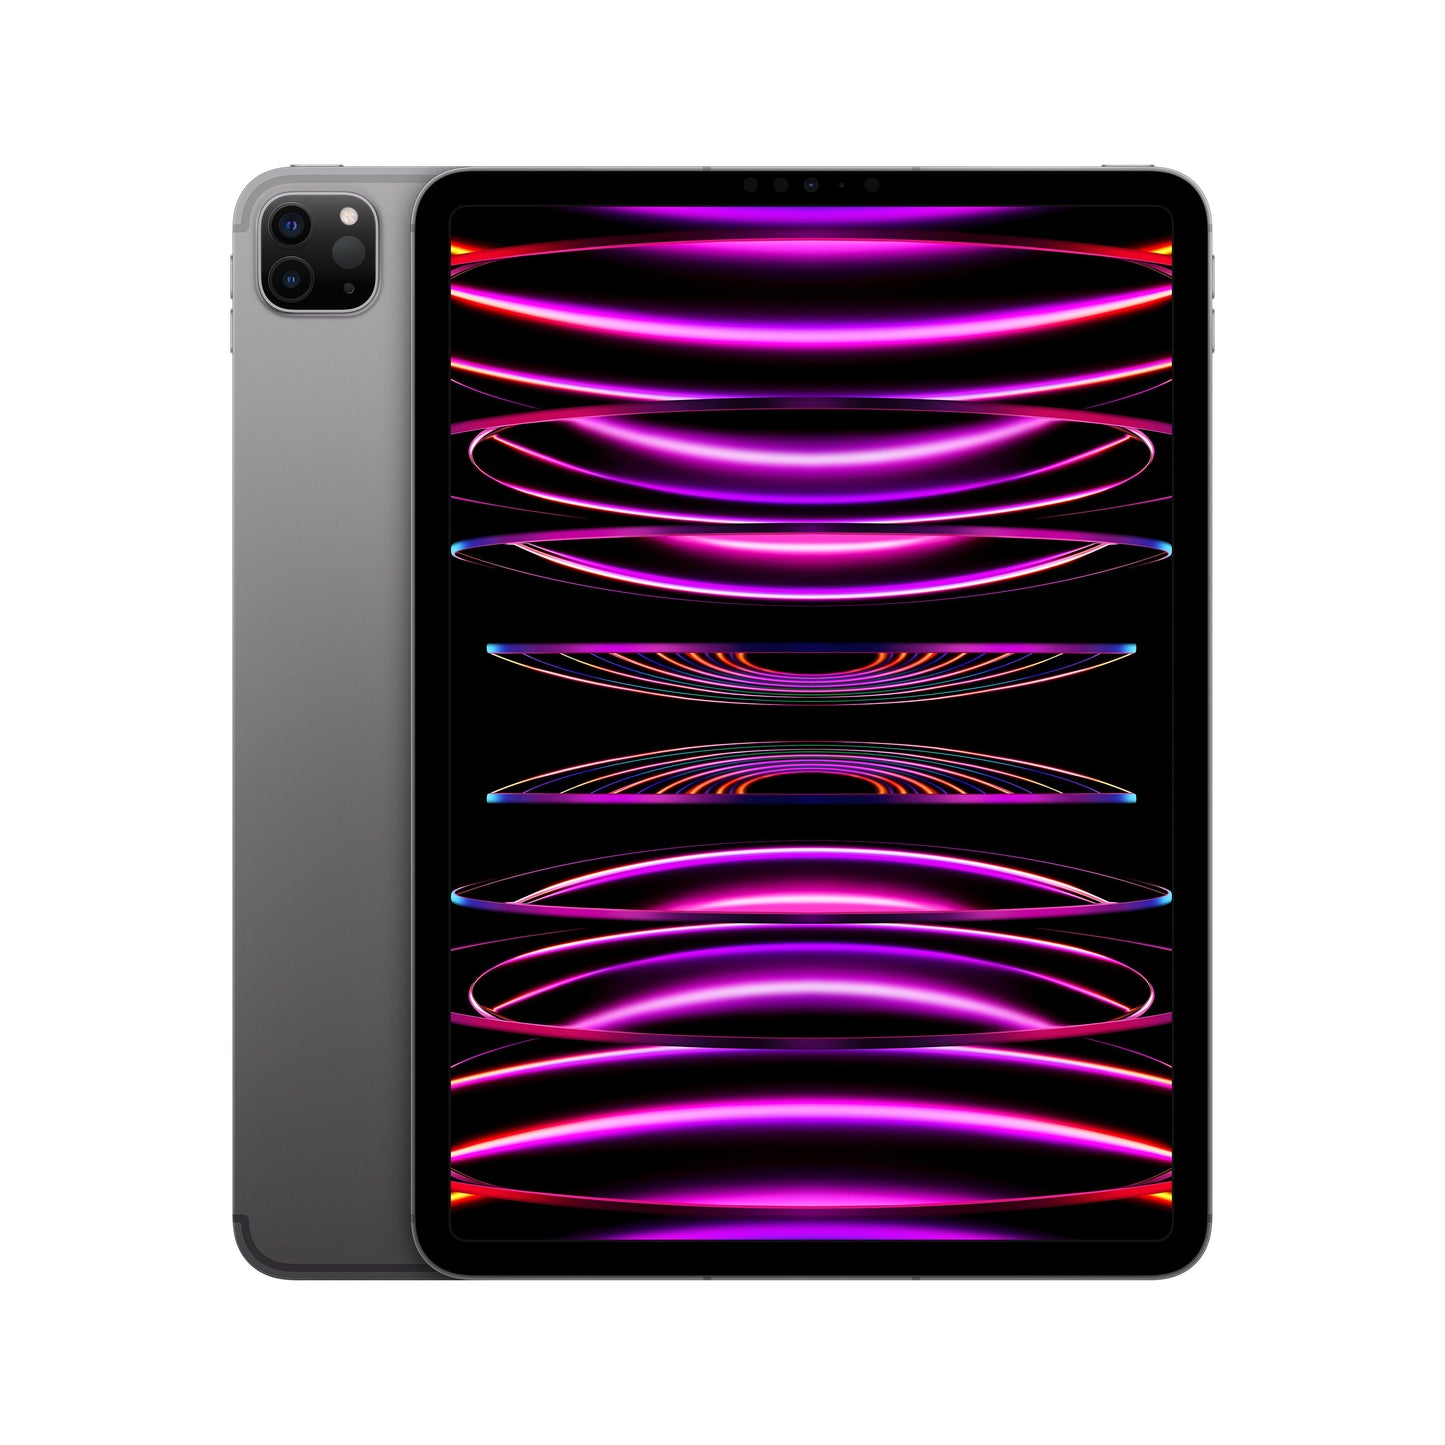 2022 11-inch iPad Pro Wi-Fi + Cellular 256GB - Space Grey (4th generation)